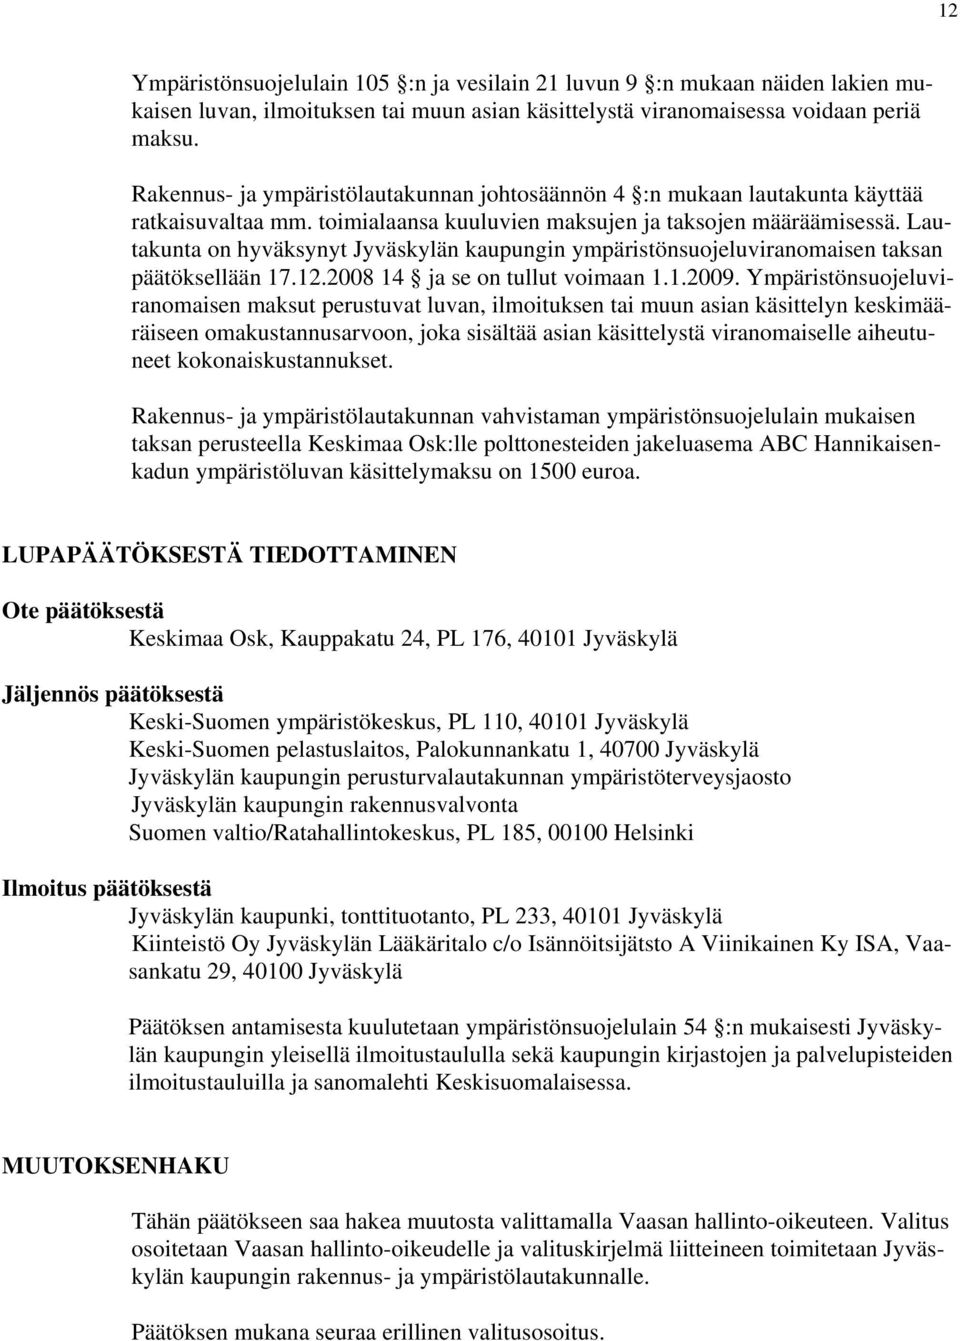 Lautakunta on hyväksynyt Jyväskylän kaupungin ympäristönsuojeluviranomaisen taksan päätöksellään 17.12.2008 14 ja se on tullut voimaan 1.1.2009.